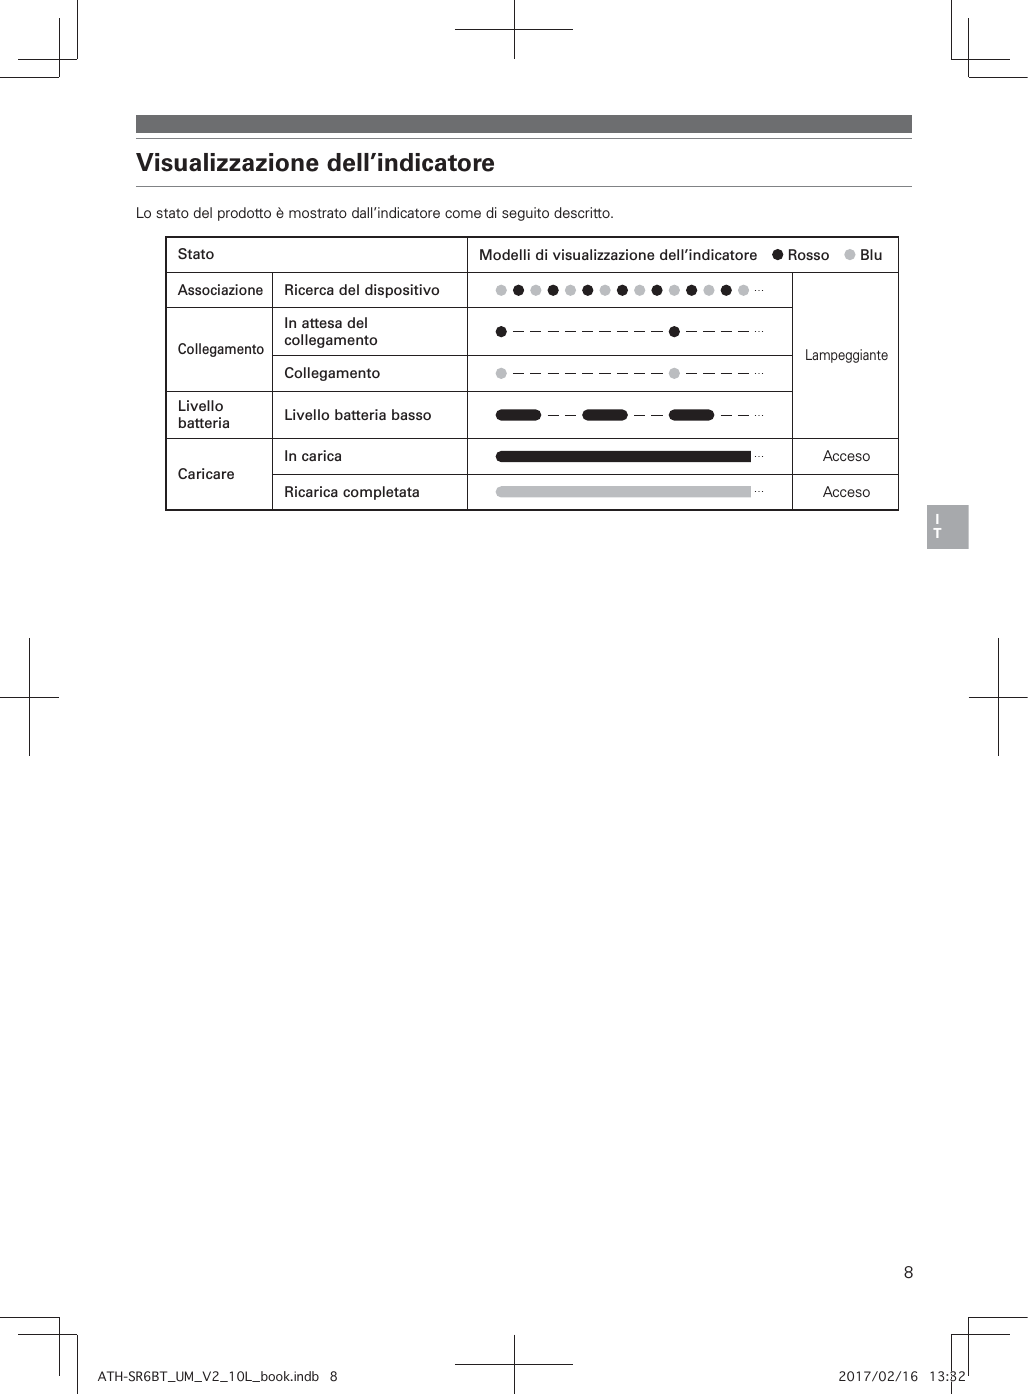 8*5Visualizzazione dell’indicatoreLo stato del prodotto è mostrato dall’indicatore come di seguito descritto.Stato Modelli di visualizzazione dell’indicatore   Rosso   BluAssociazioneRicerca del dispositivoLampeggianteCollegamentoIn attesa del collegamentoCollegamentoLivello batteria Livello batteria bassoCaricareIn carica AccesoRicarica completata Acceso?RF+QP4@R]SK]T0]/.J]`mmi,glb`6 0./5-.0-/4/1810